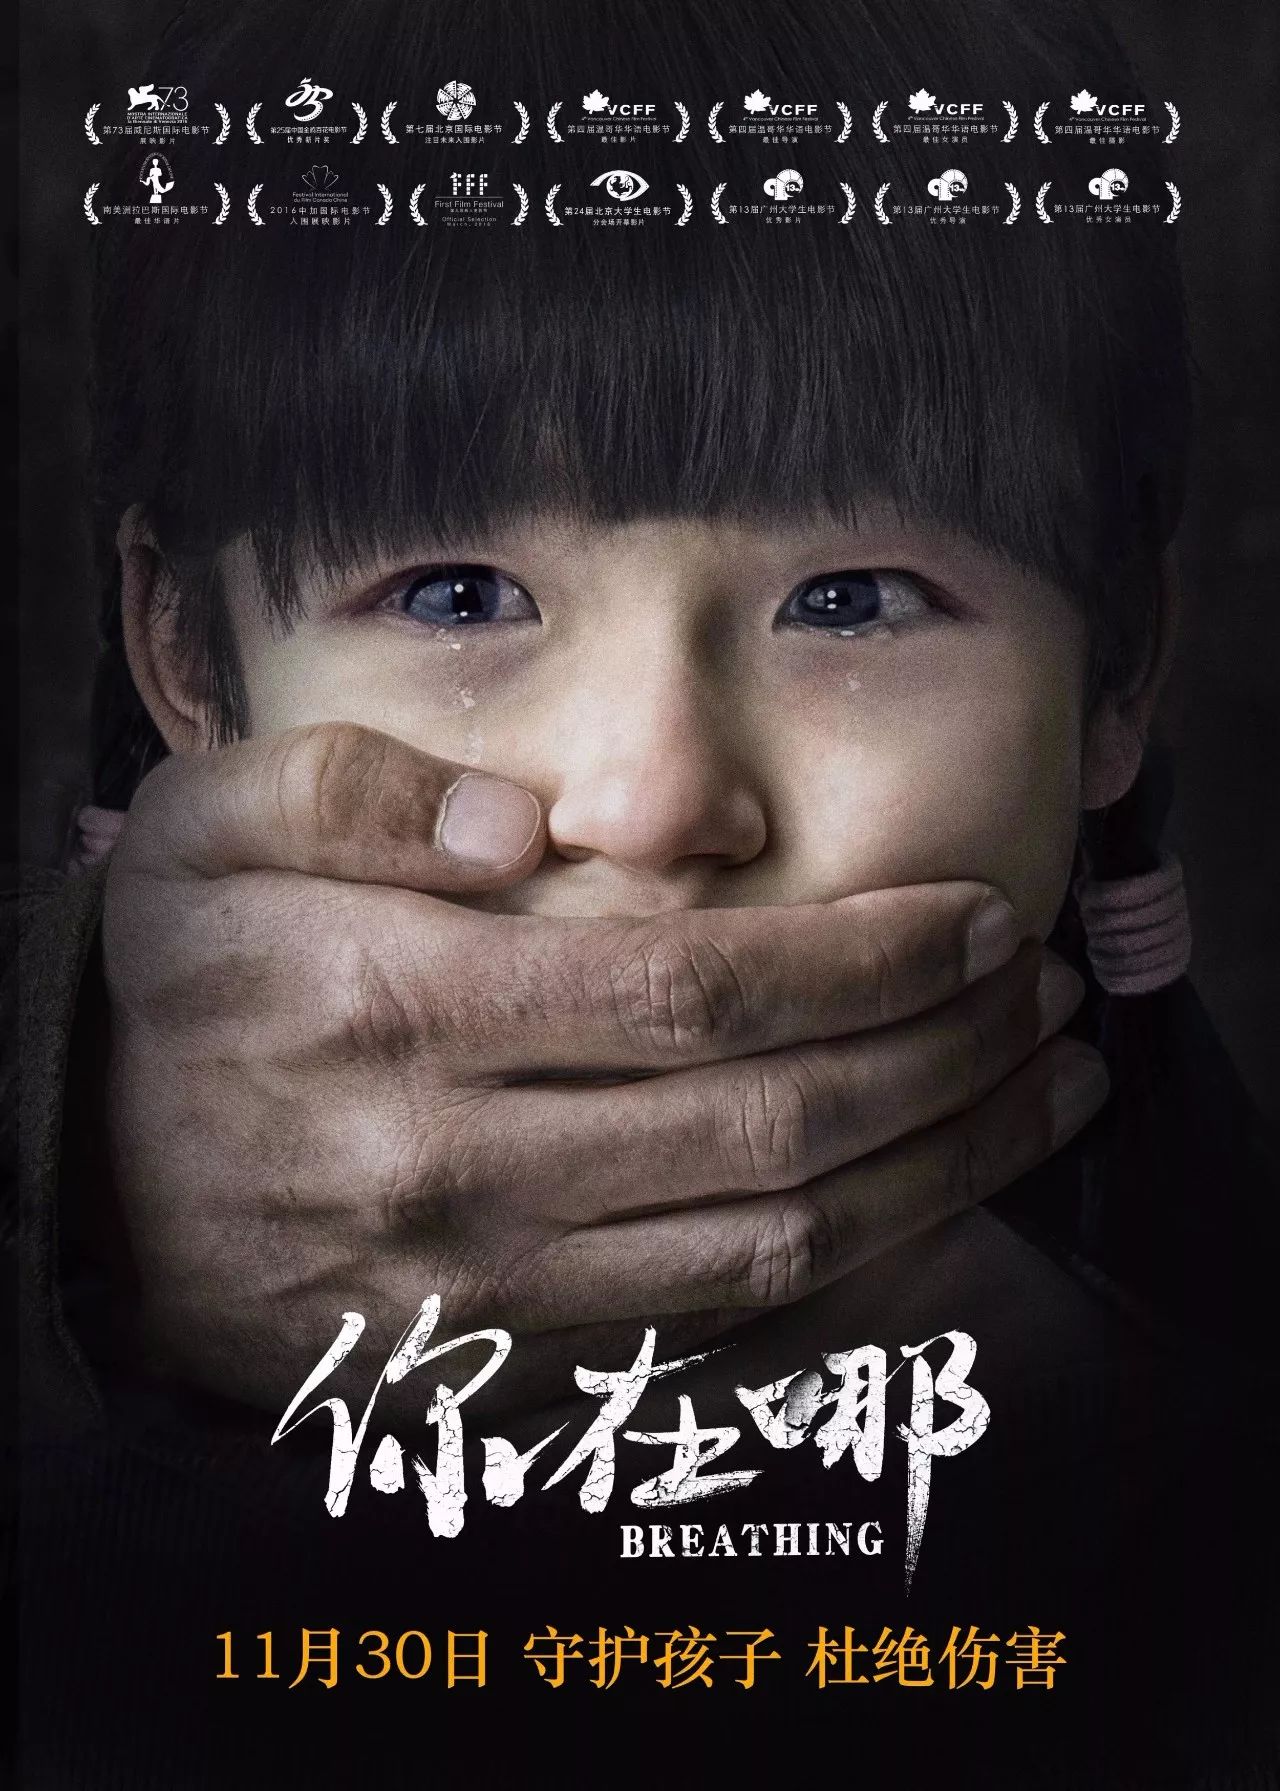 《你在哪》首映 吴京樊昊仑呼吁守护孩子杜绝伤害